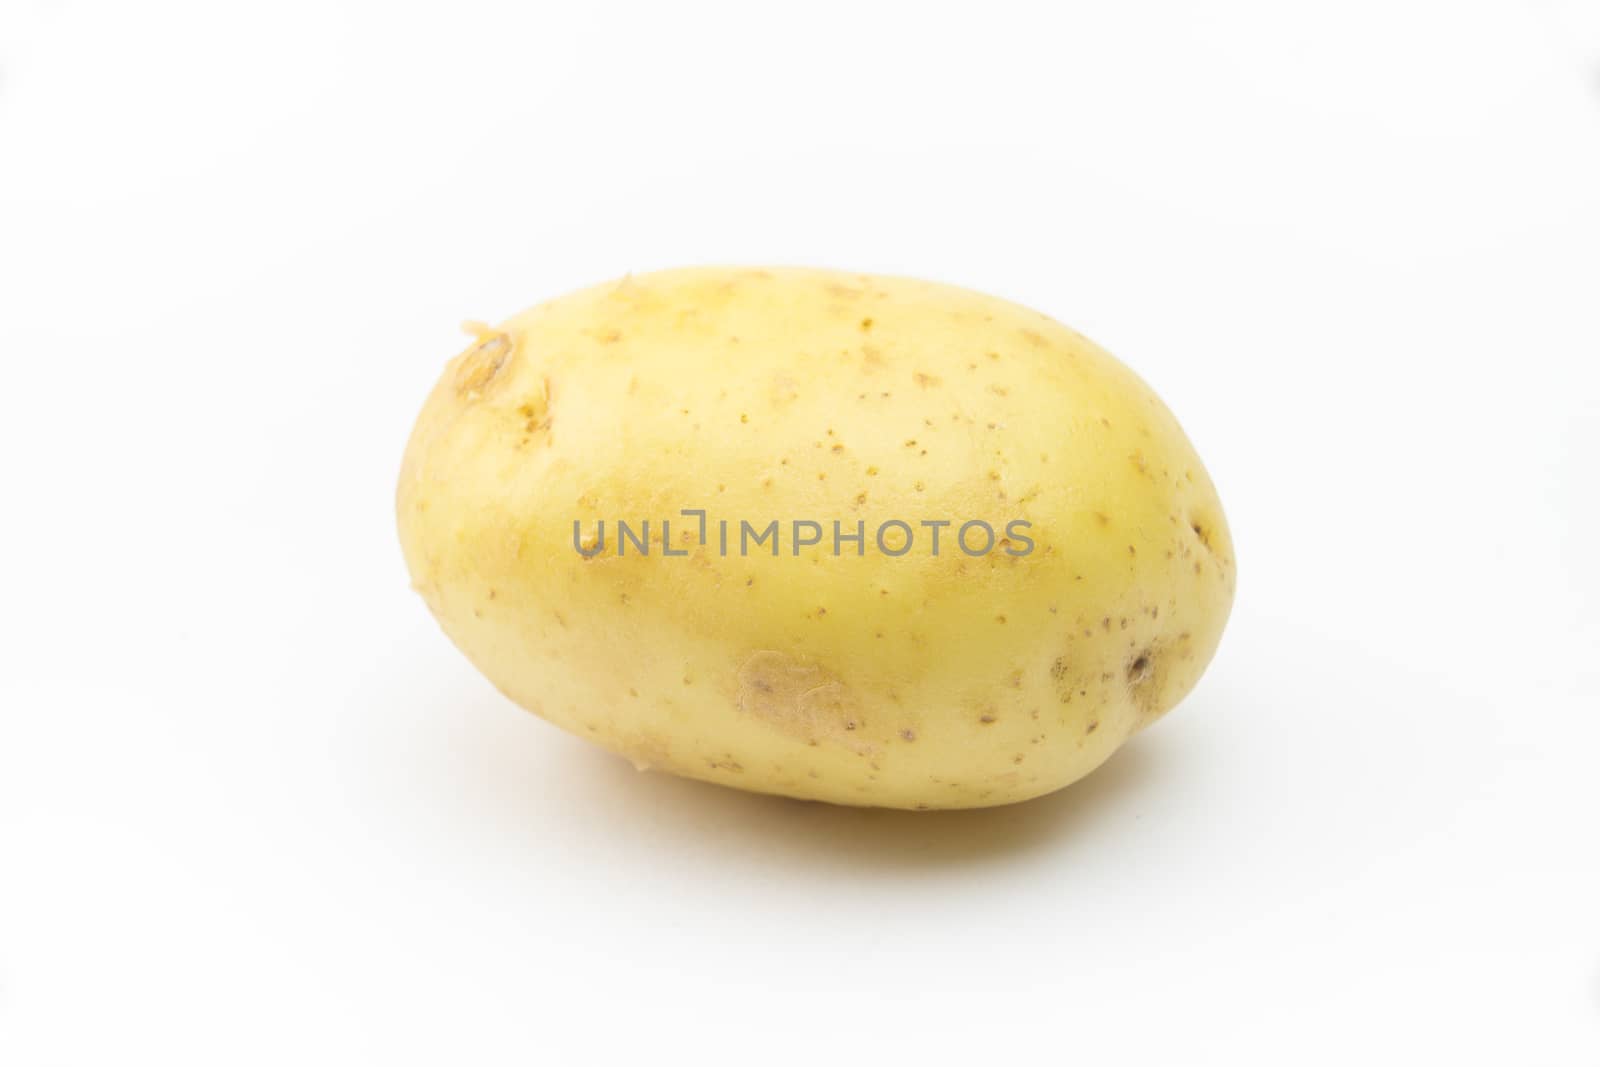 Potato on the white background